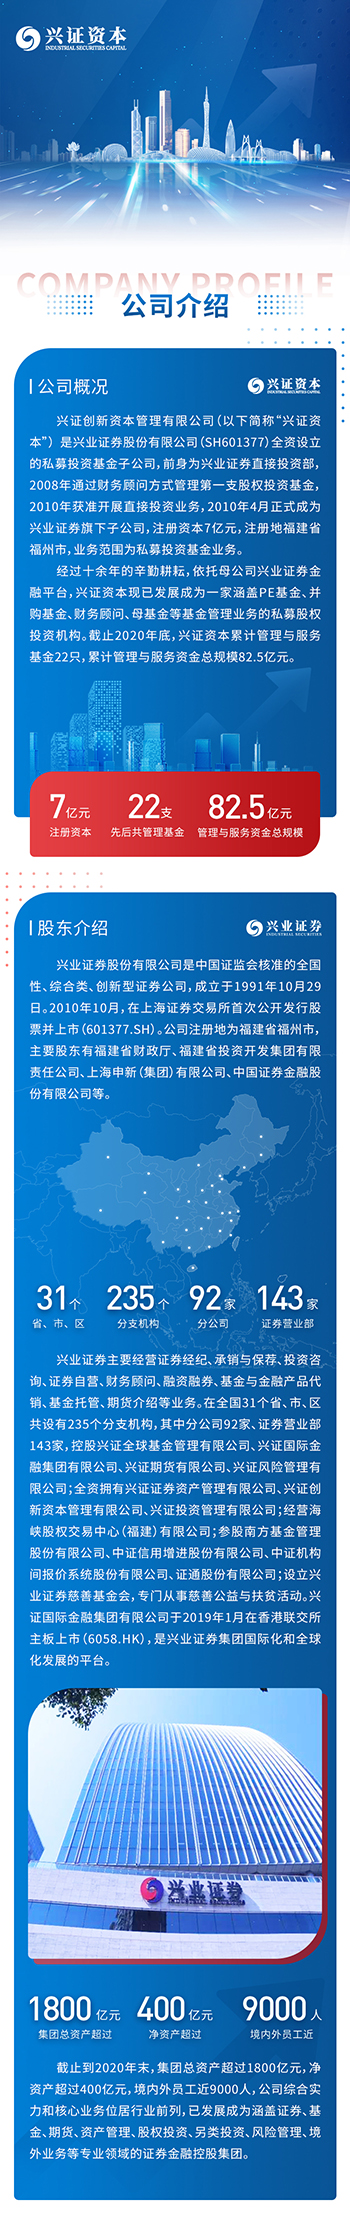 微信平台运营 上海微信运营